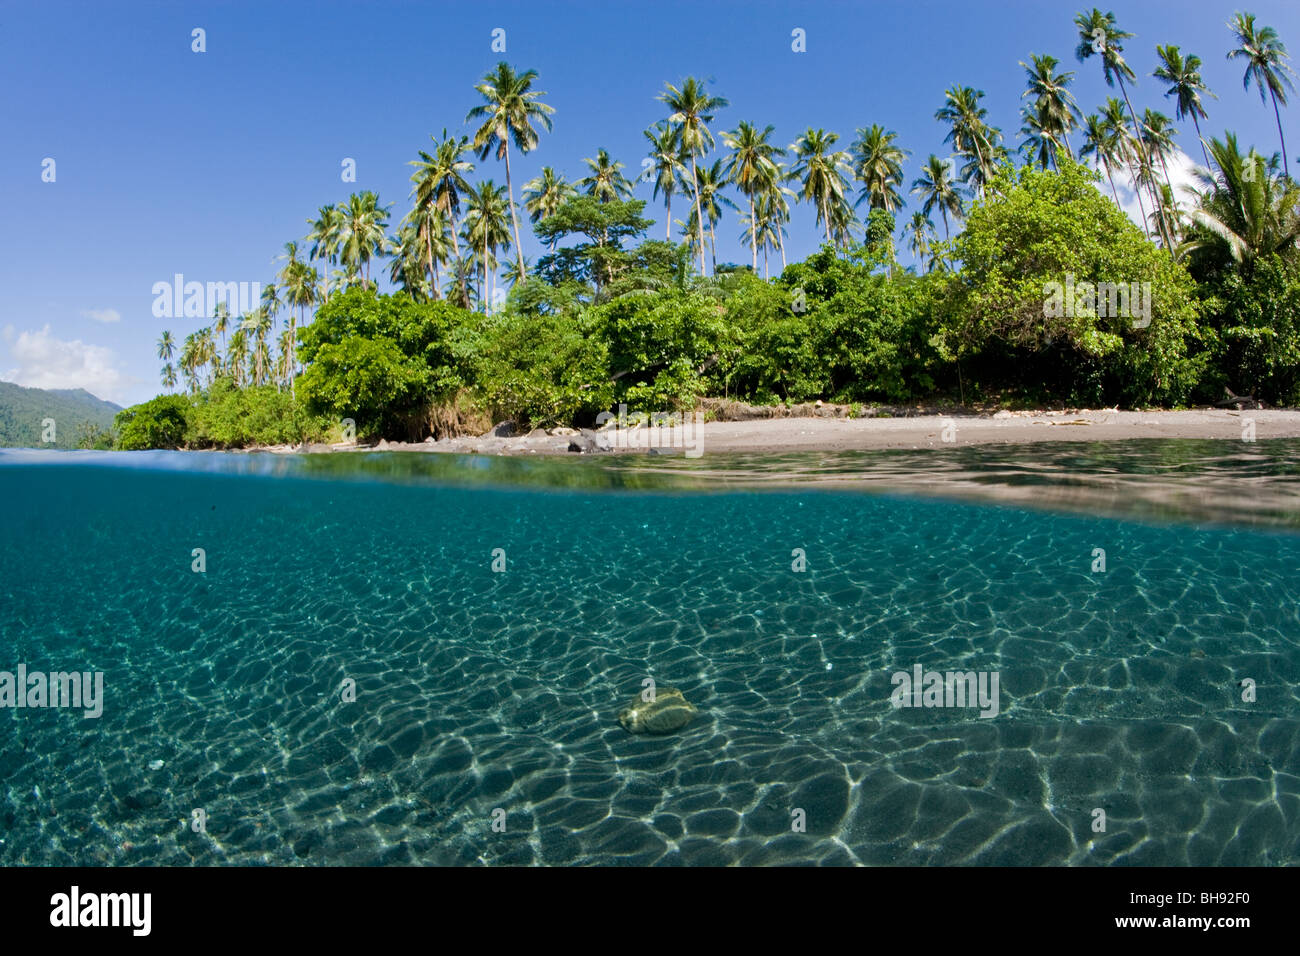 Palm lined Beach of Tahulandang Island, Sangihe-Talaud Archipelago, Sulawesi, Indonesia Stock Photo